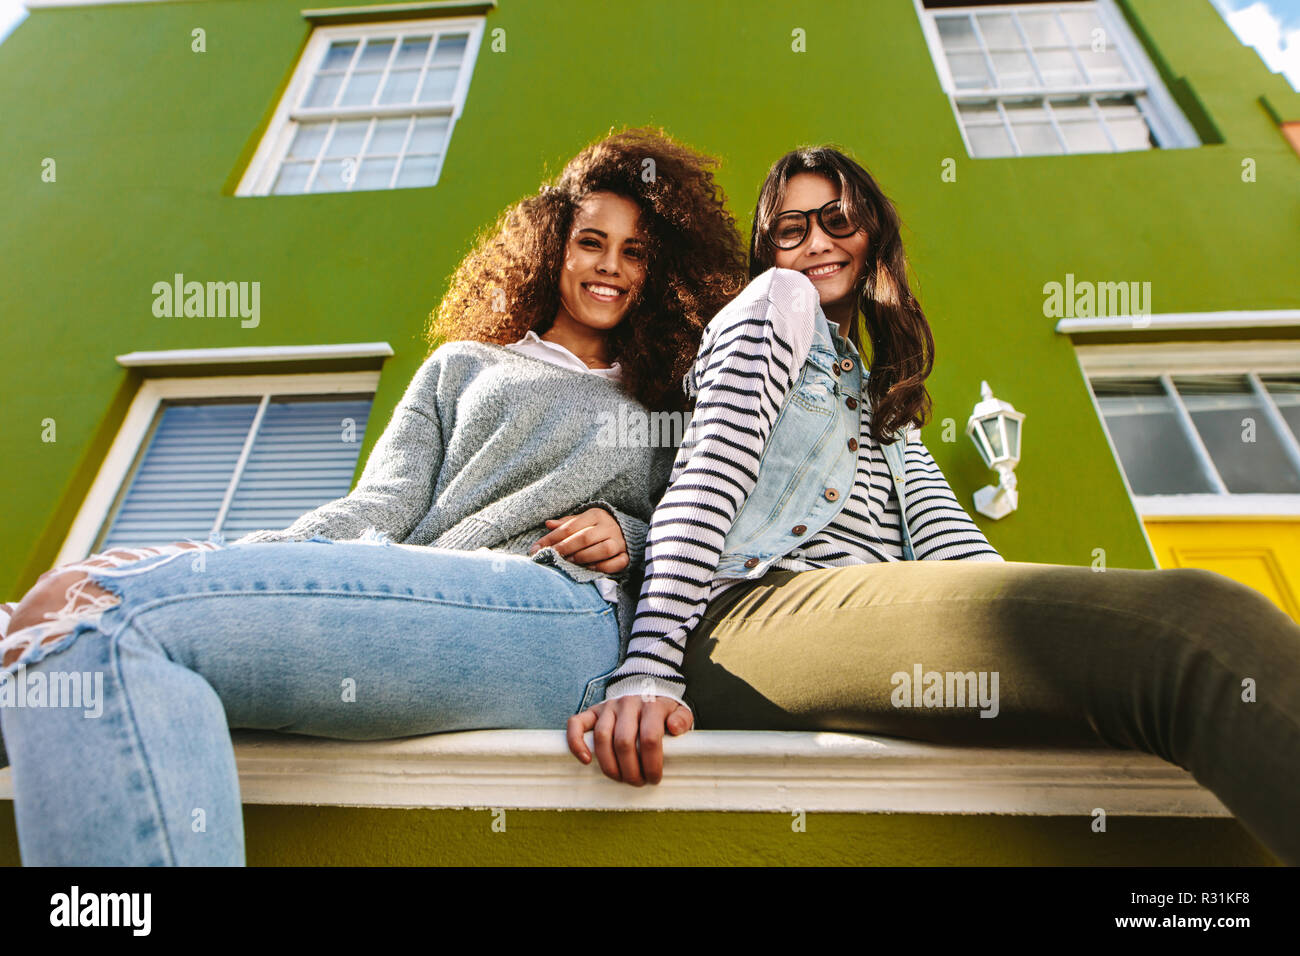 Low angle view of two women assis sur un banc à l'extérieur une maison verte. Les amis de l'extérieur. Banque D'Images